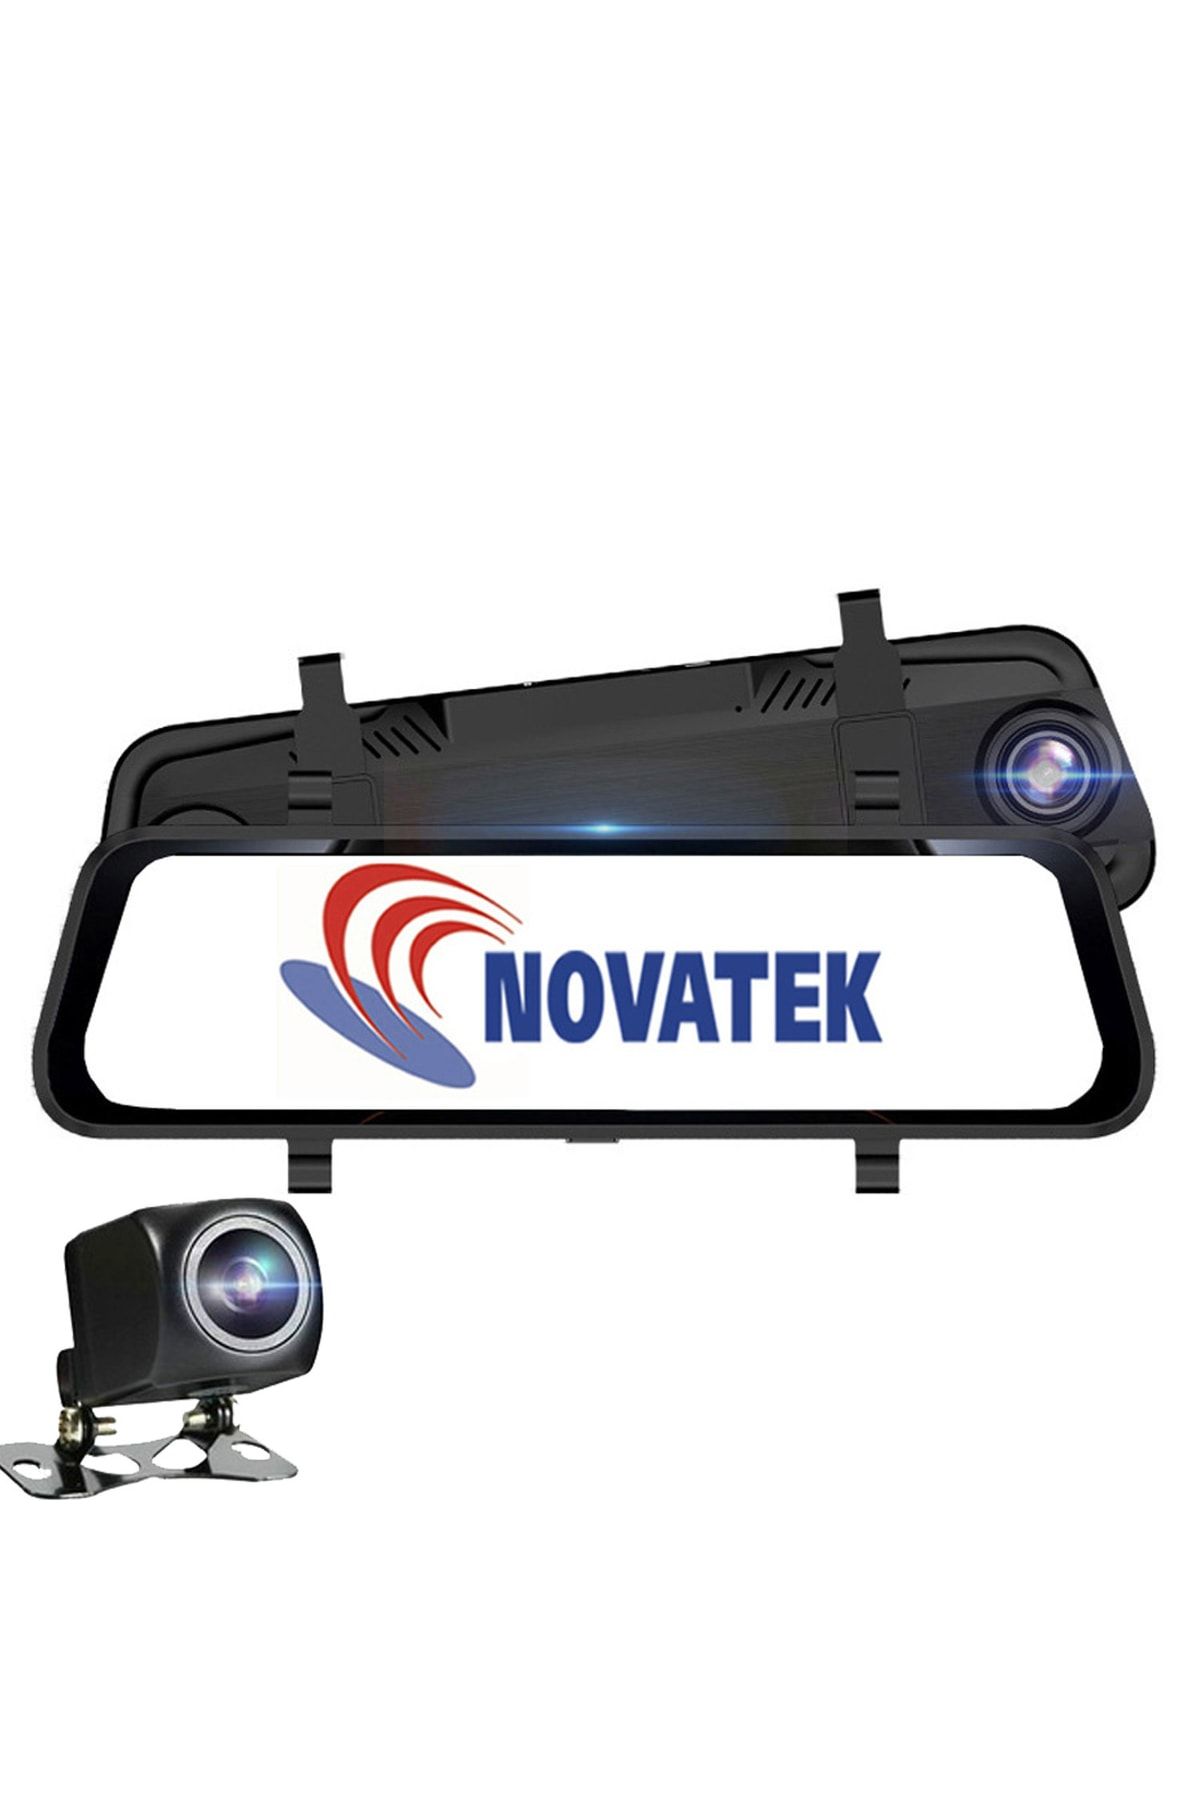 Novatek Nt921gw+64gb Hafıza Kartlı 2k 1440p+1080p Gps Wifi Çift Yön Ips Dokunmatik Araç Kamerası